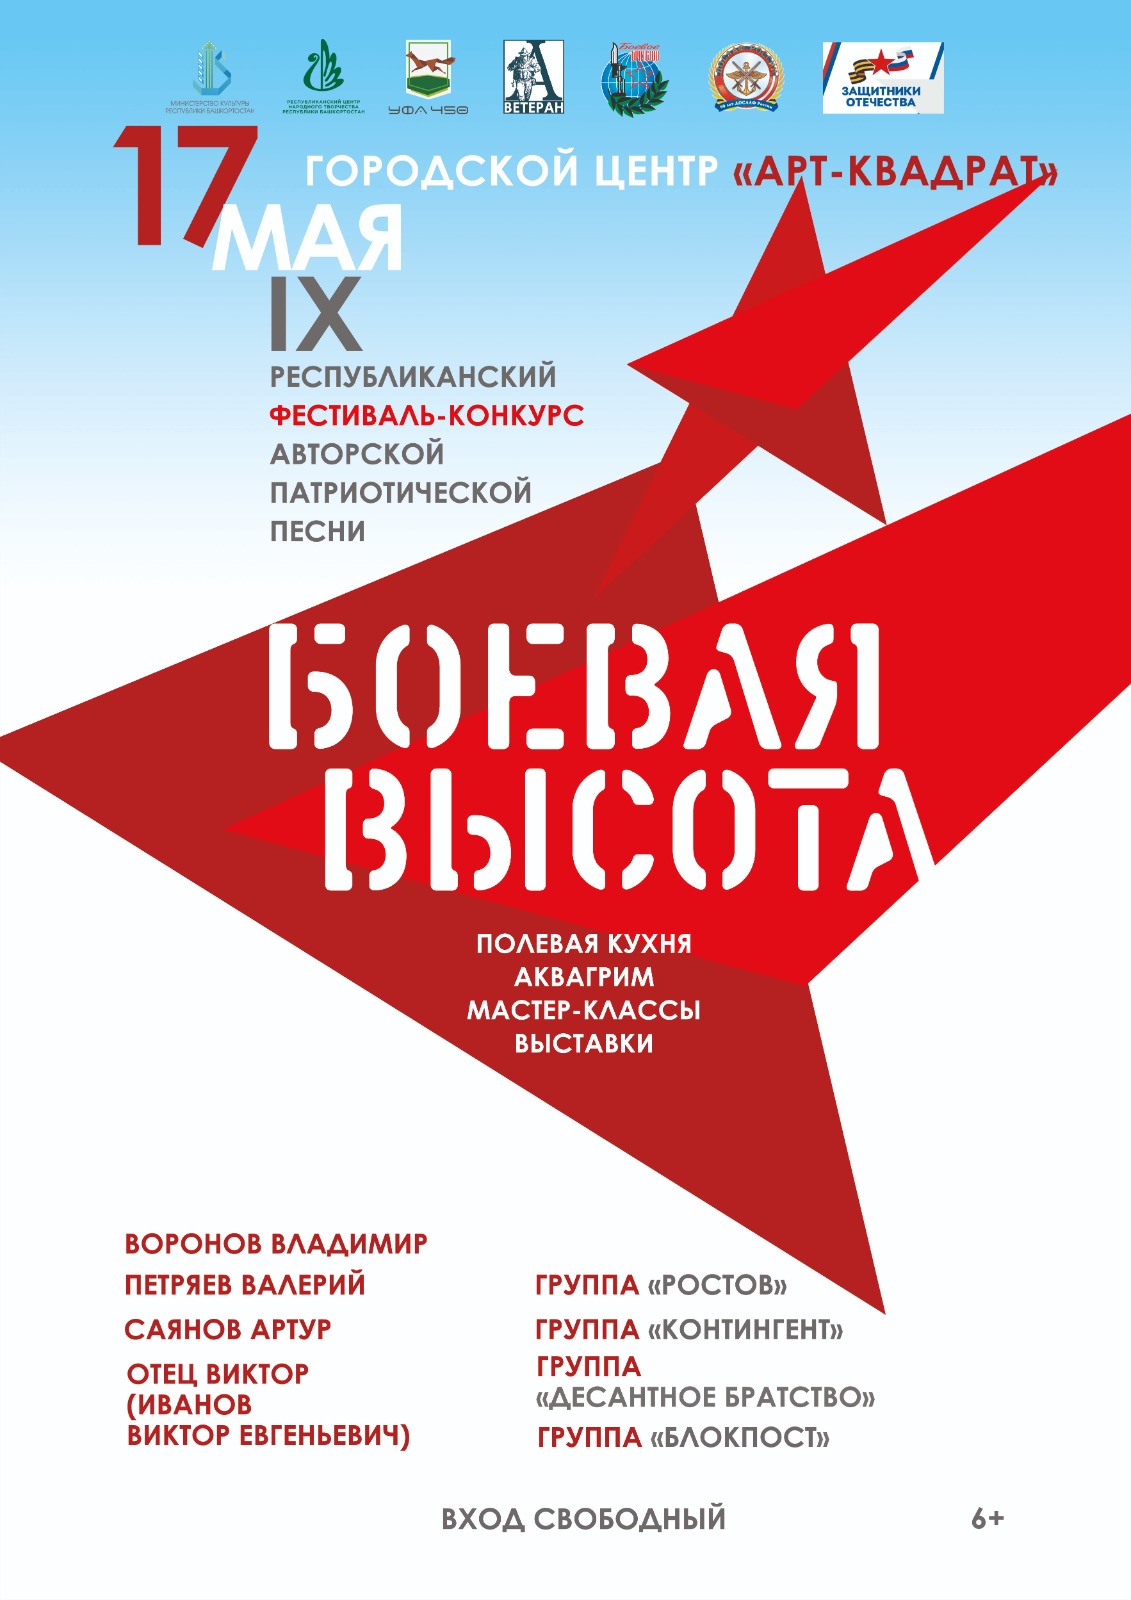 В Уфе пройдет IX Республиканский фестиваль-конкурс авторской патриотической песни  «Боевая высота»